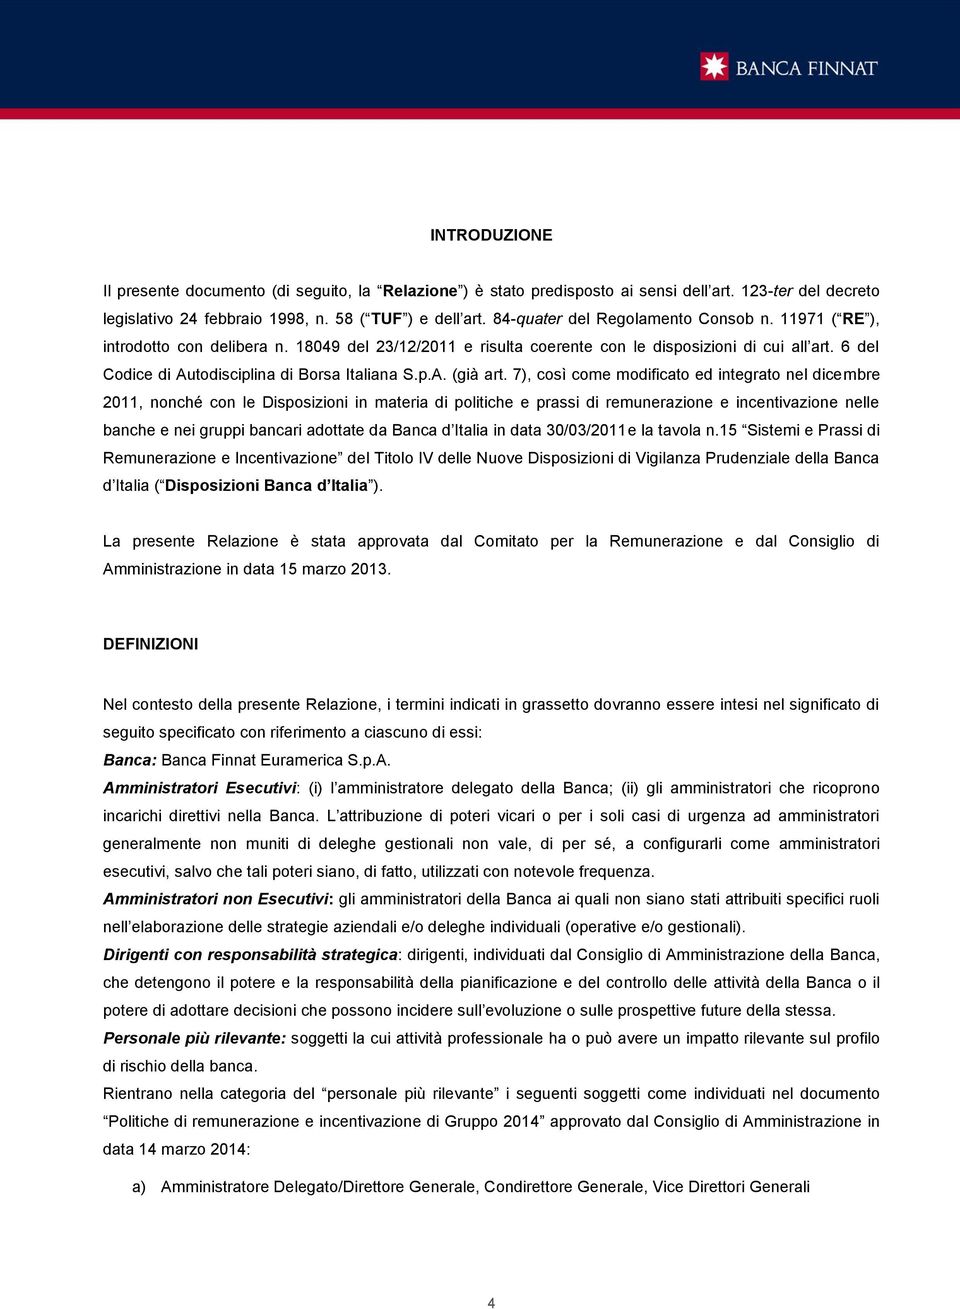 6 del Codice di Autodisciplina di Borsa Italiana S.p.A. (già art.